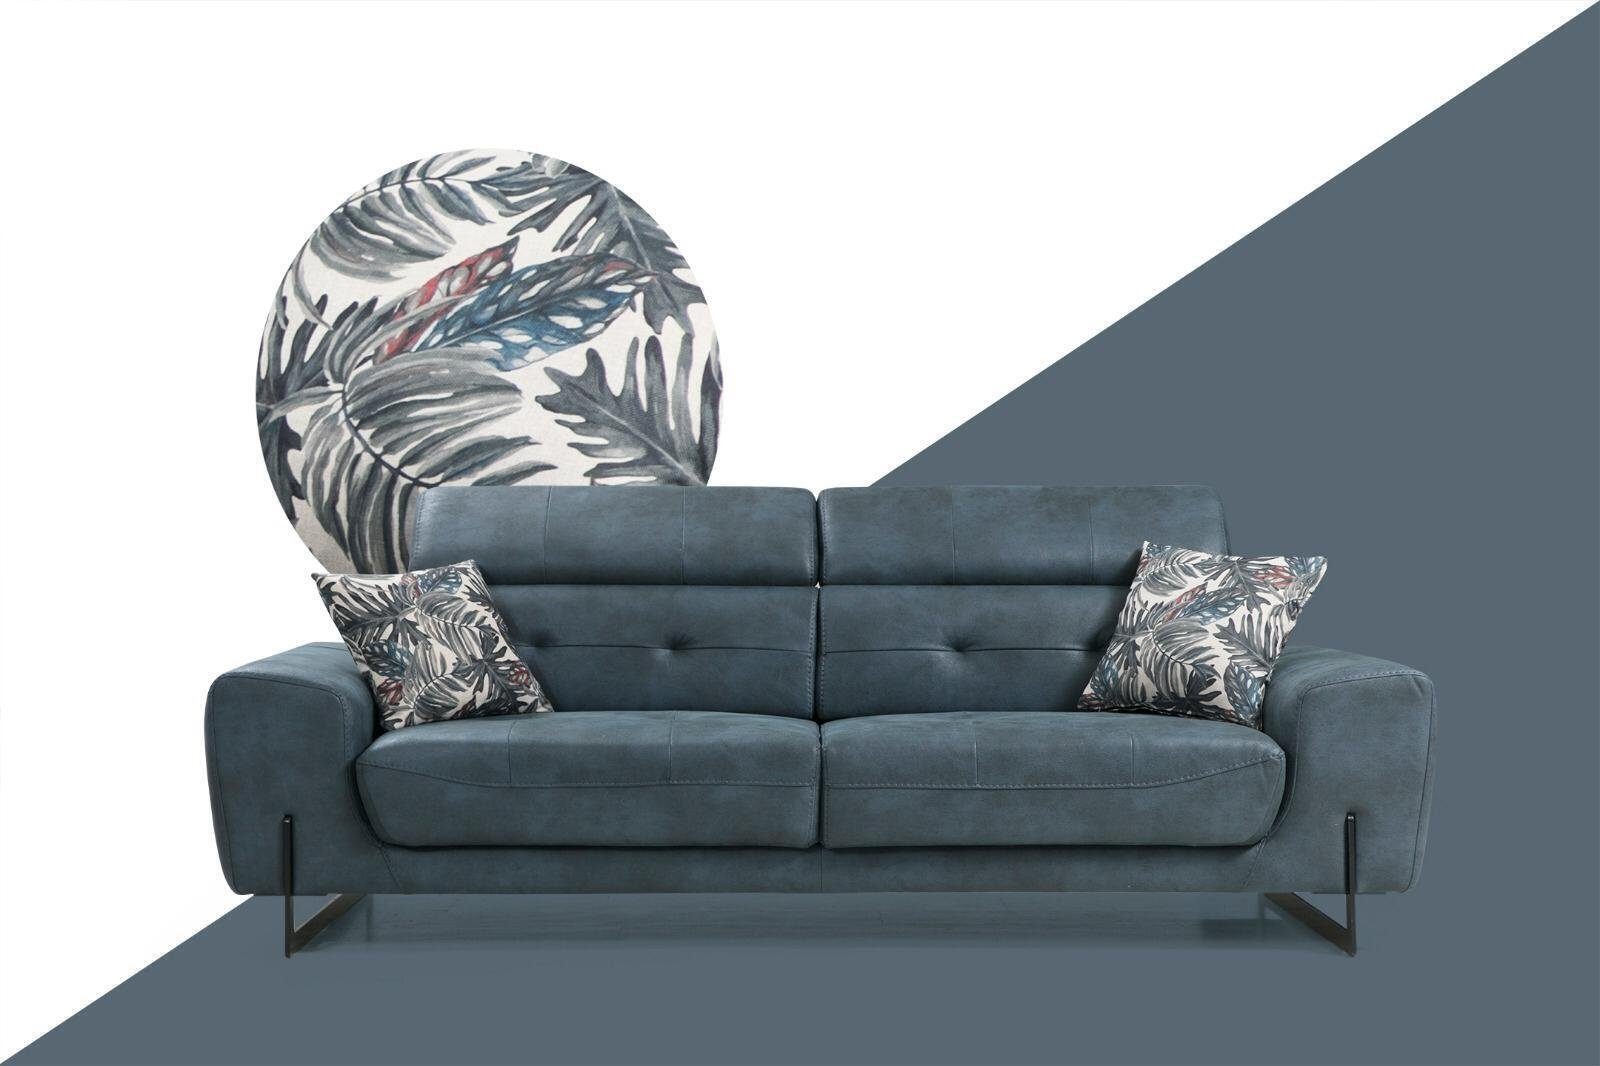 JVmoebel 3-Sitzer Blau Sofa Designer Möbel Wohnzimmer Modern Sitzmöbel Neu, 1 Teile, Made in Europa